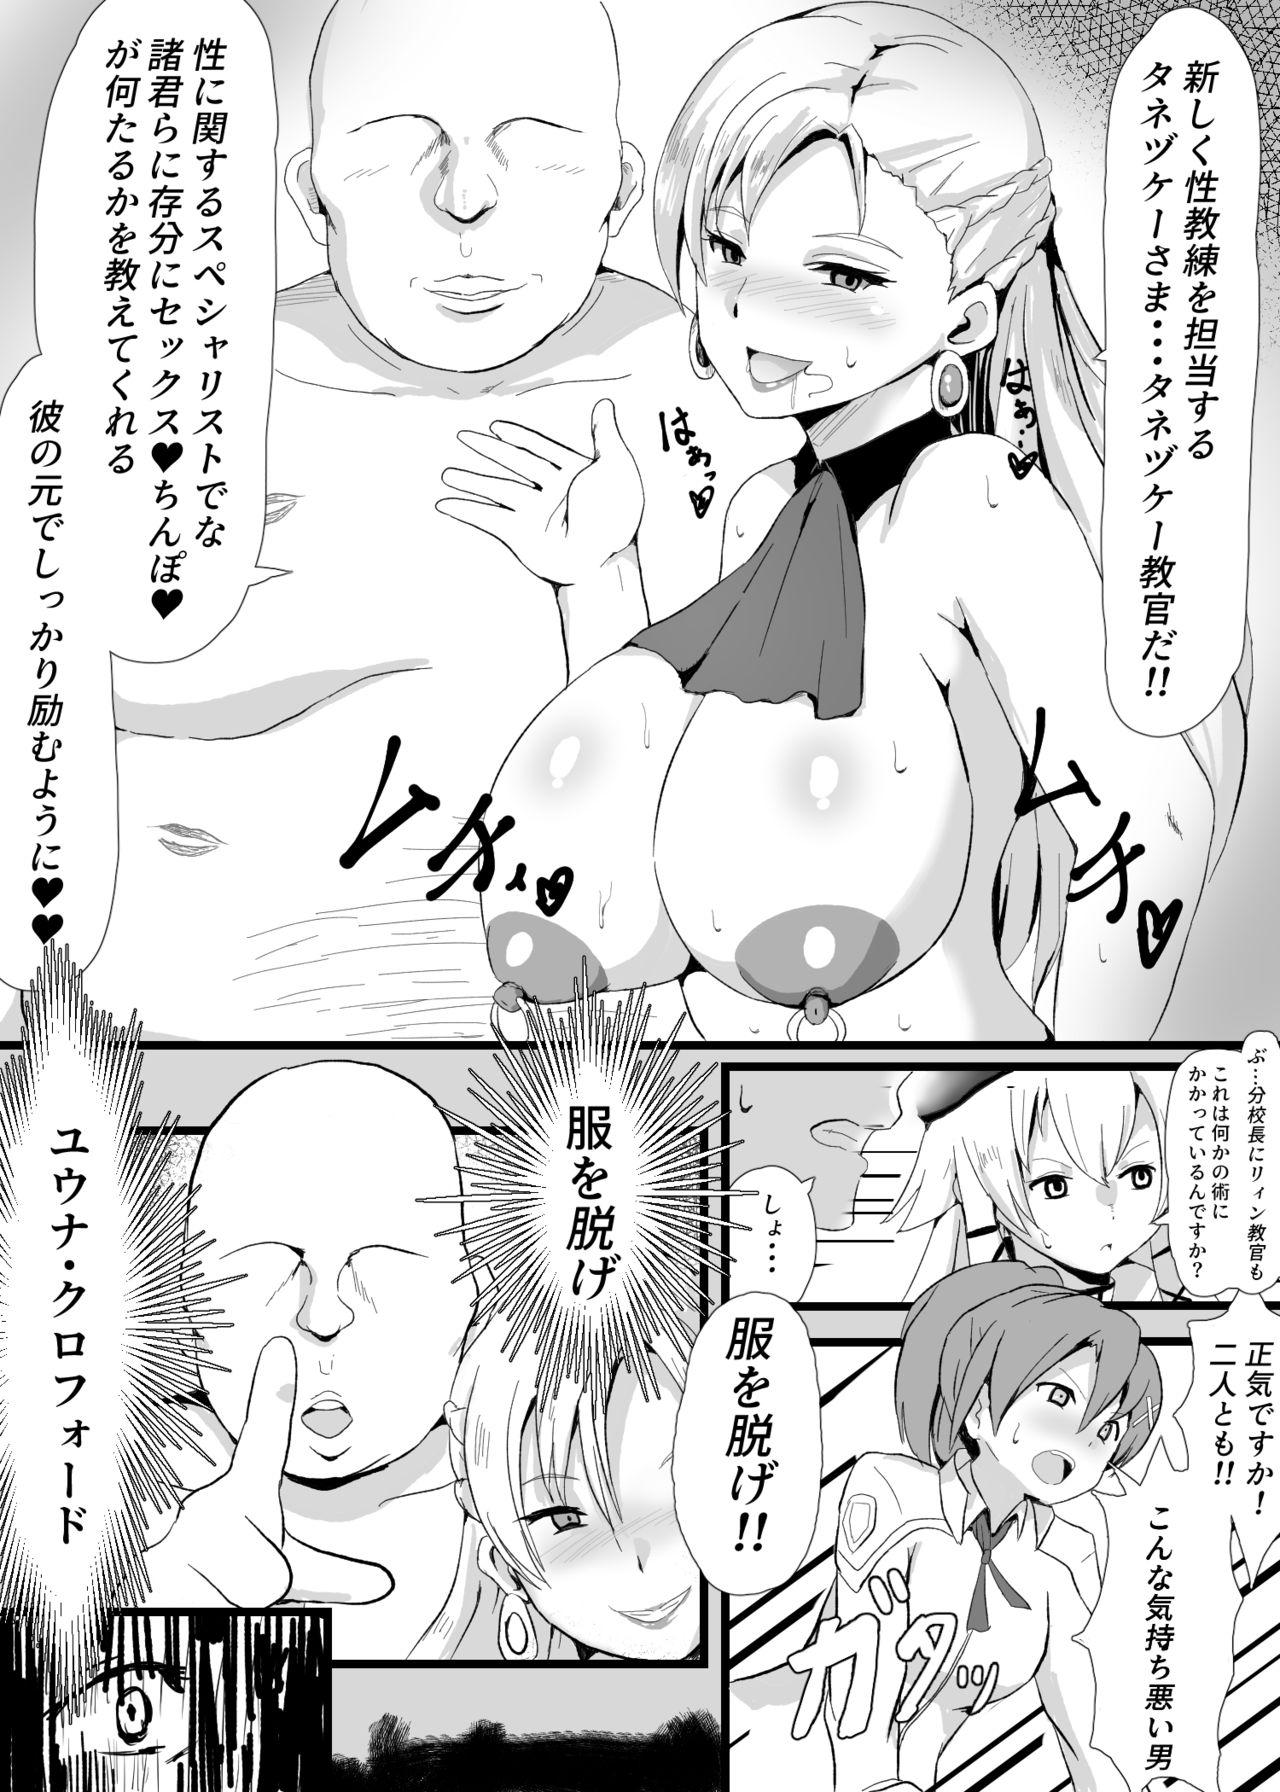 Sex Pussy 閃の軌跡 - The legend of heroes | eiyuu densetsu Femdom Pov - Page 3